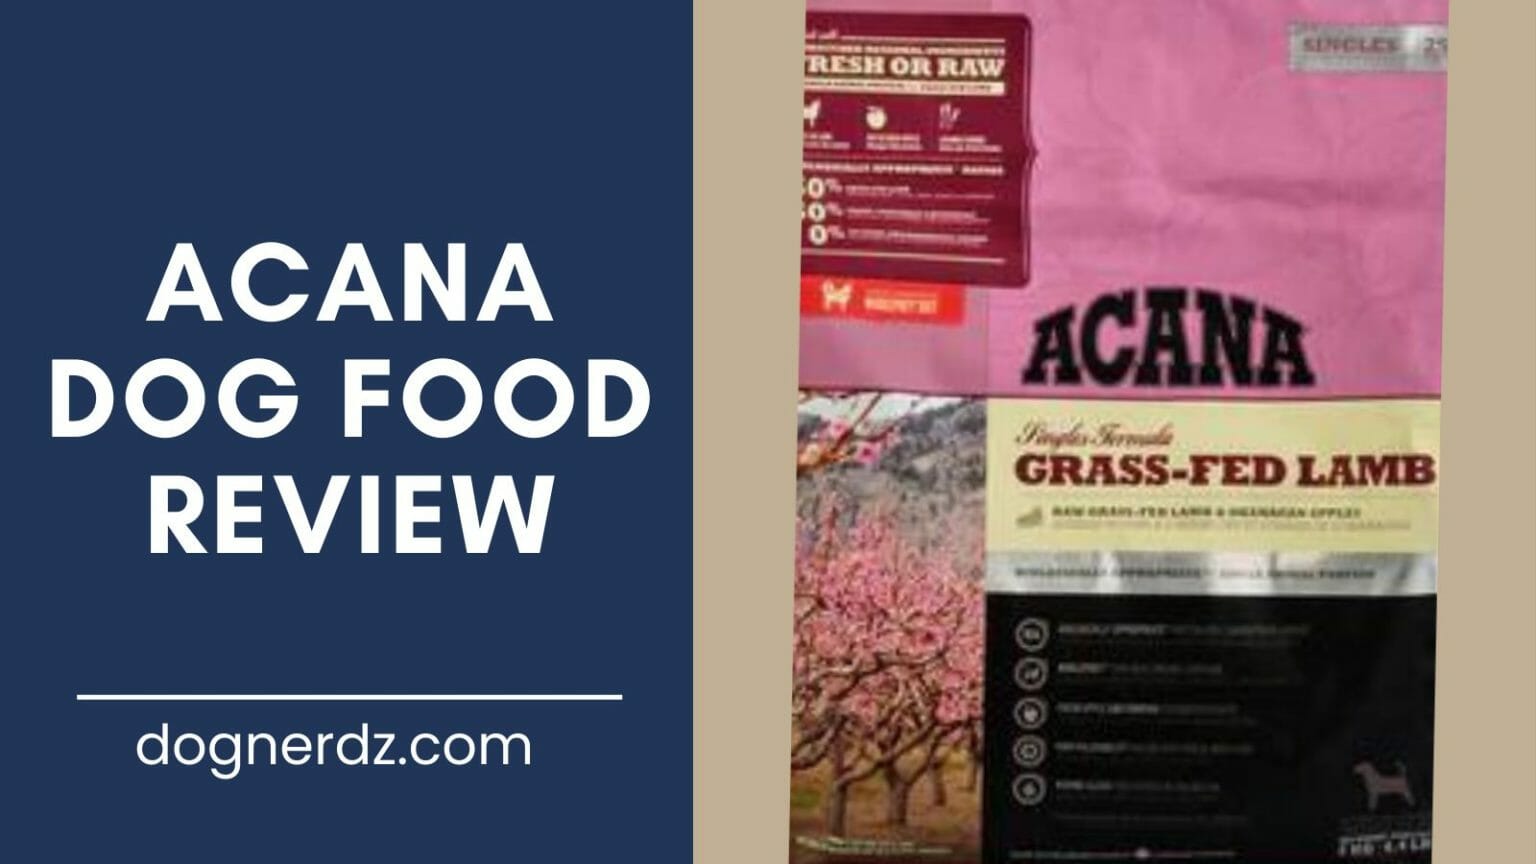 Acana Dog Food Review (2022 Guide) Dog Nerdz